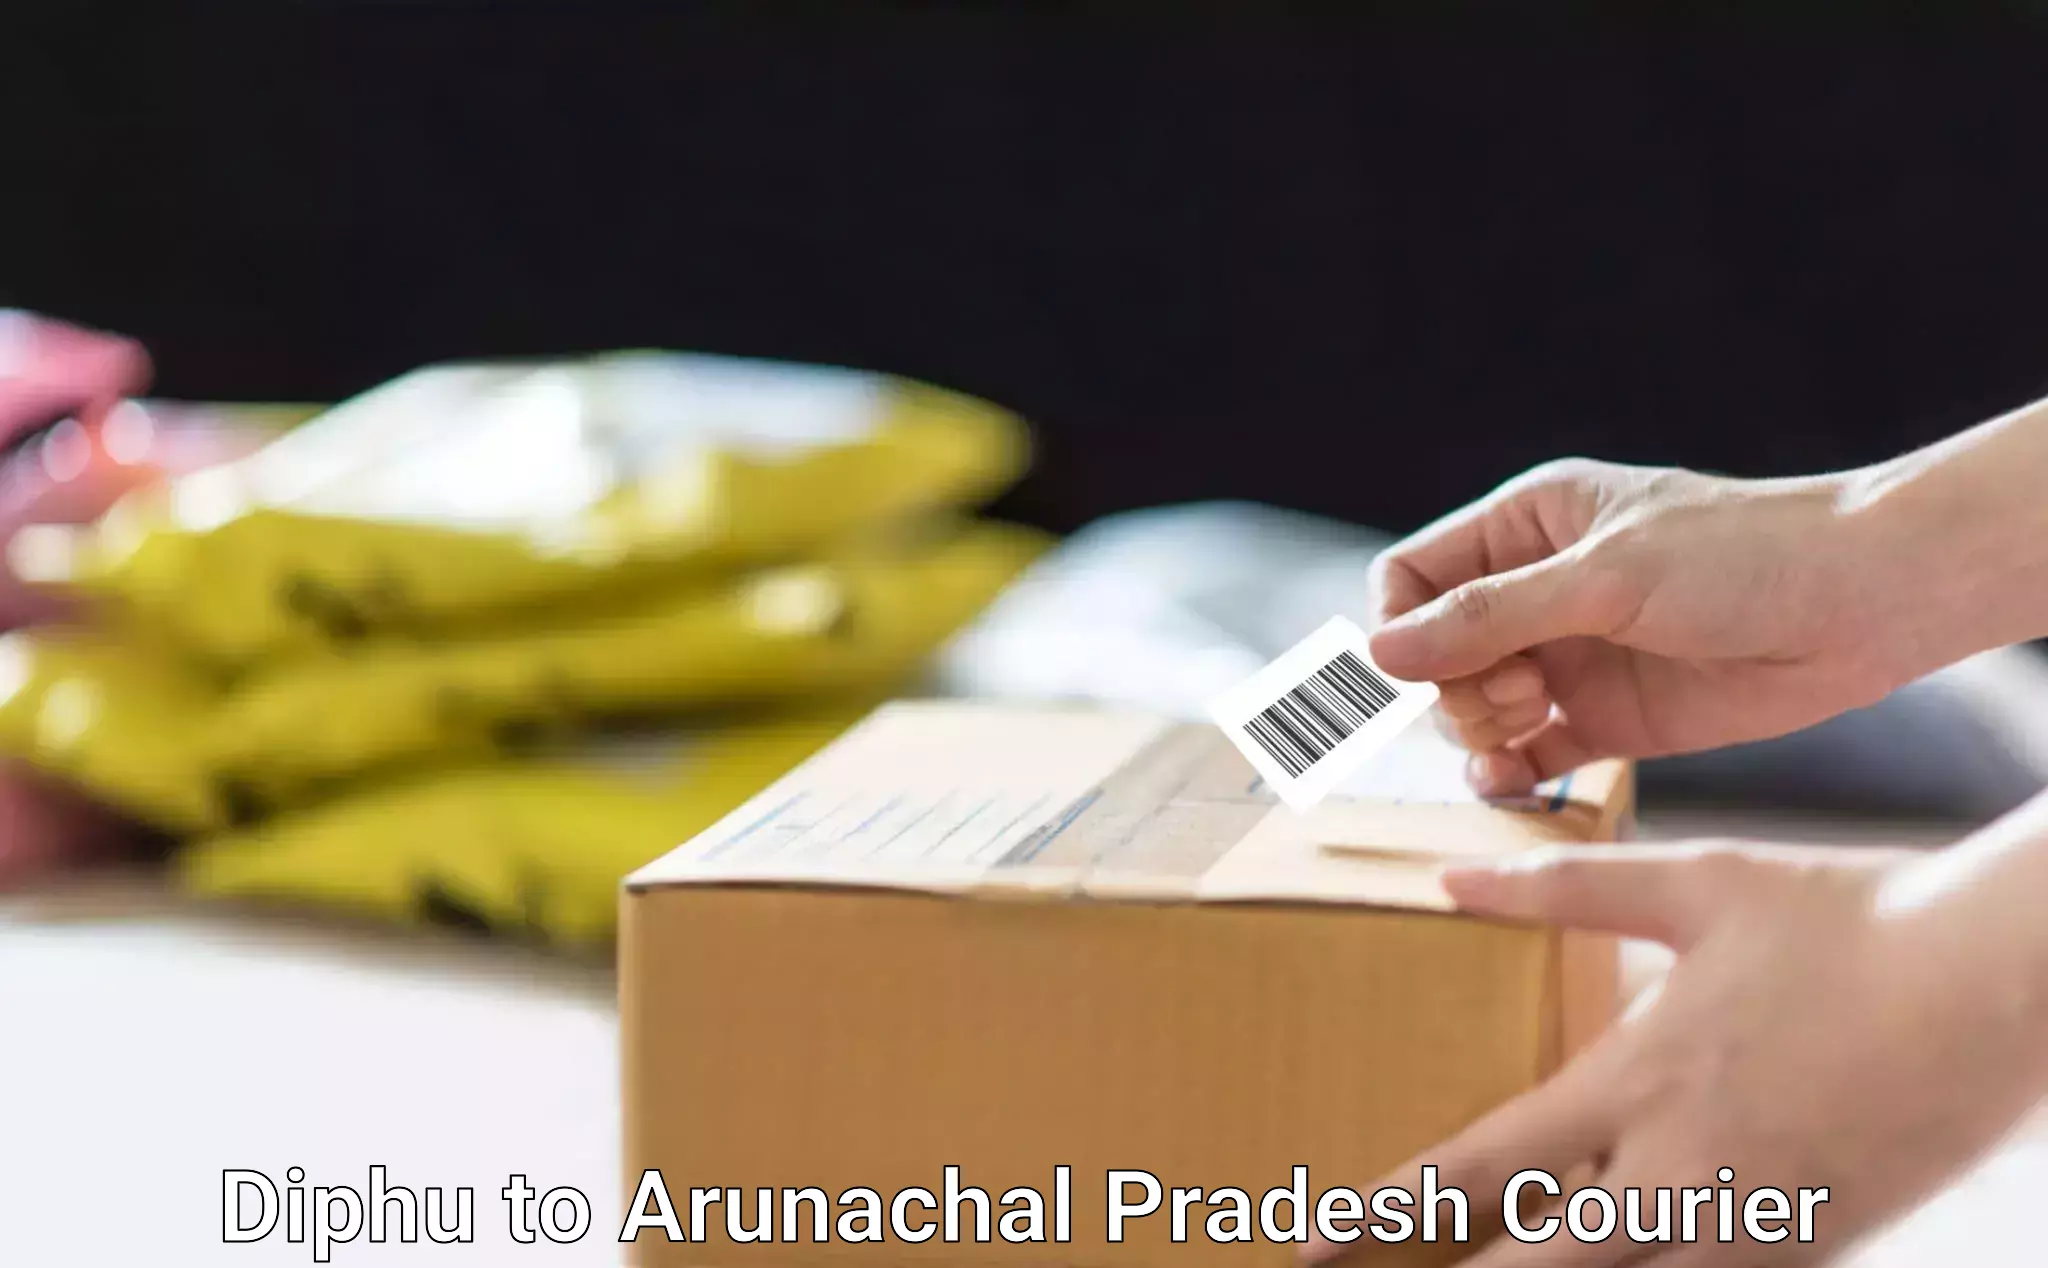 Parcel handling and care Diphu to Arunachal Pradesh